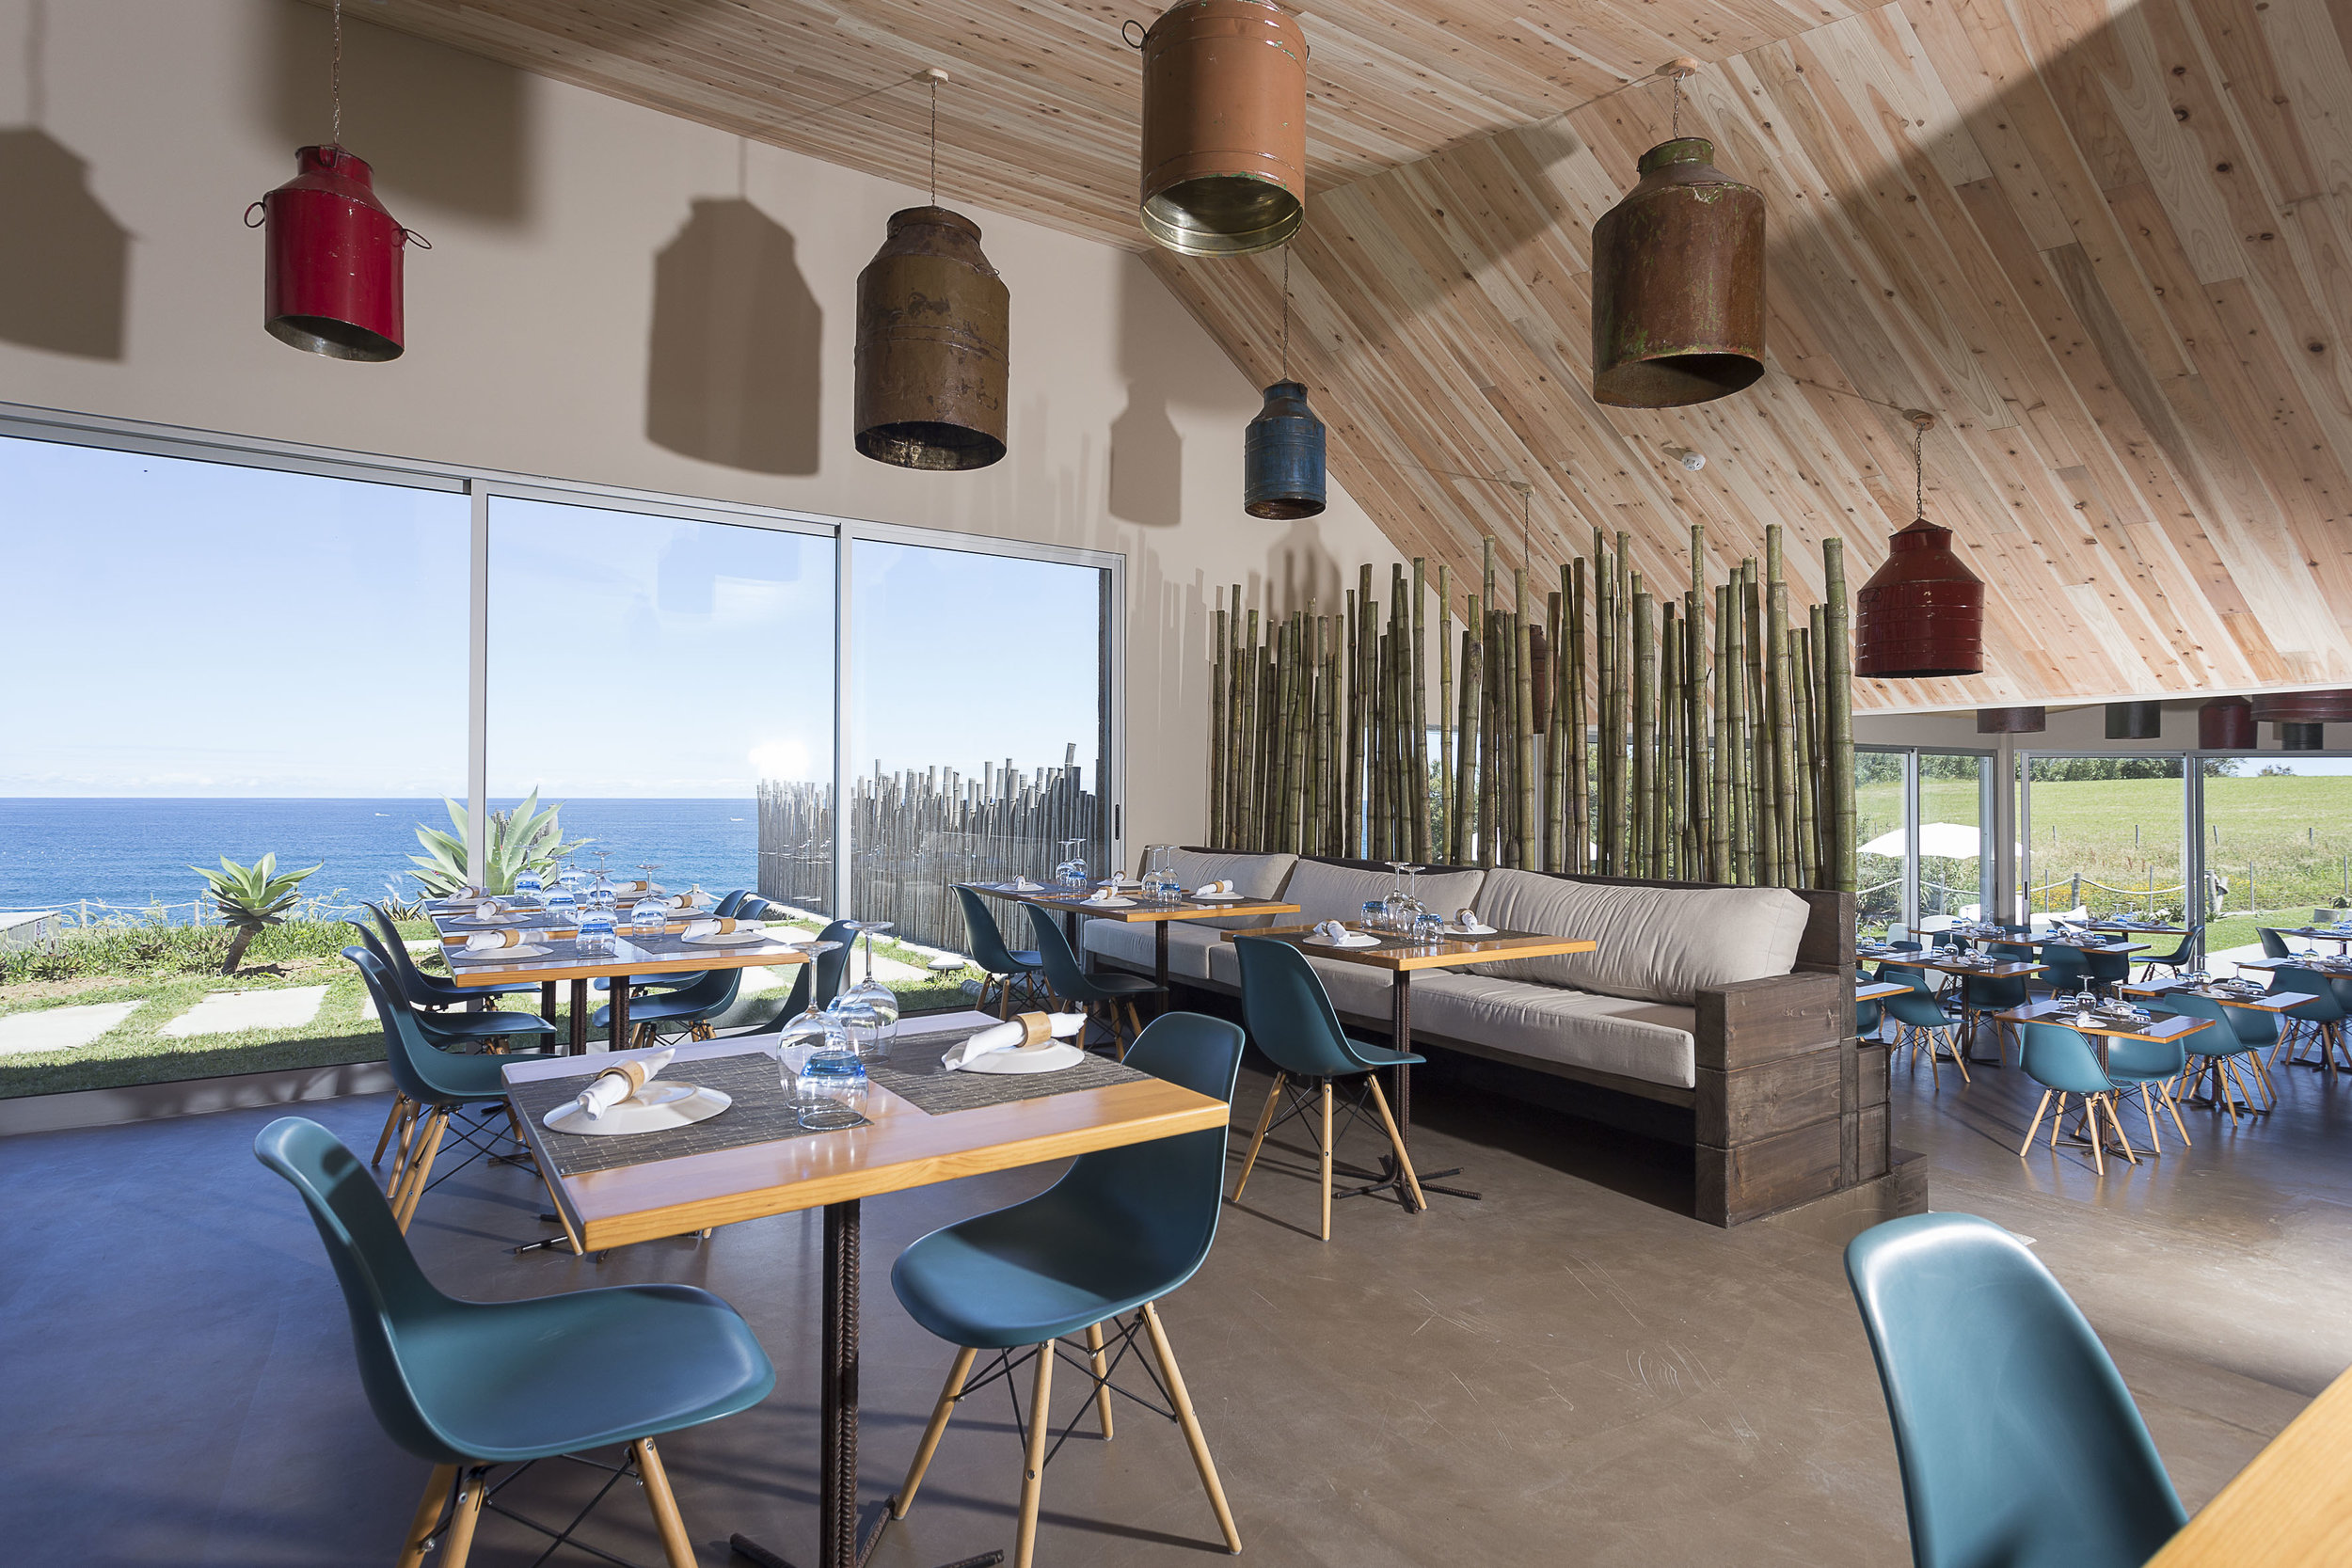 Azores Hotels | Santa Barbara Eco Beach Resort Sao Miguel